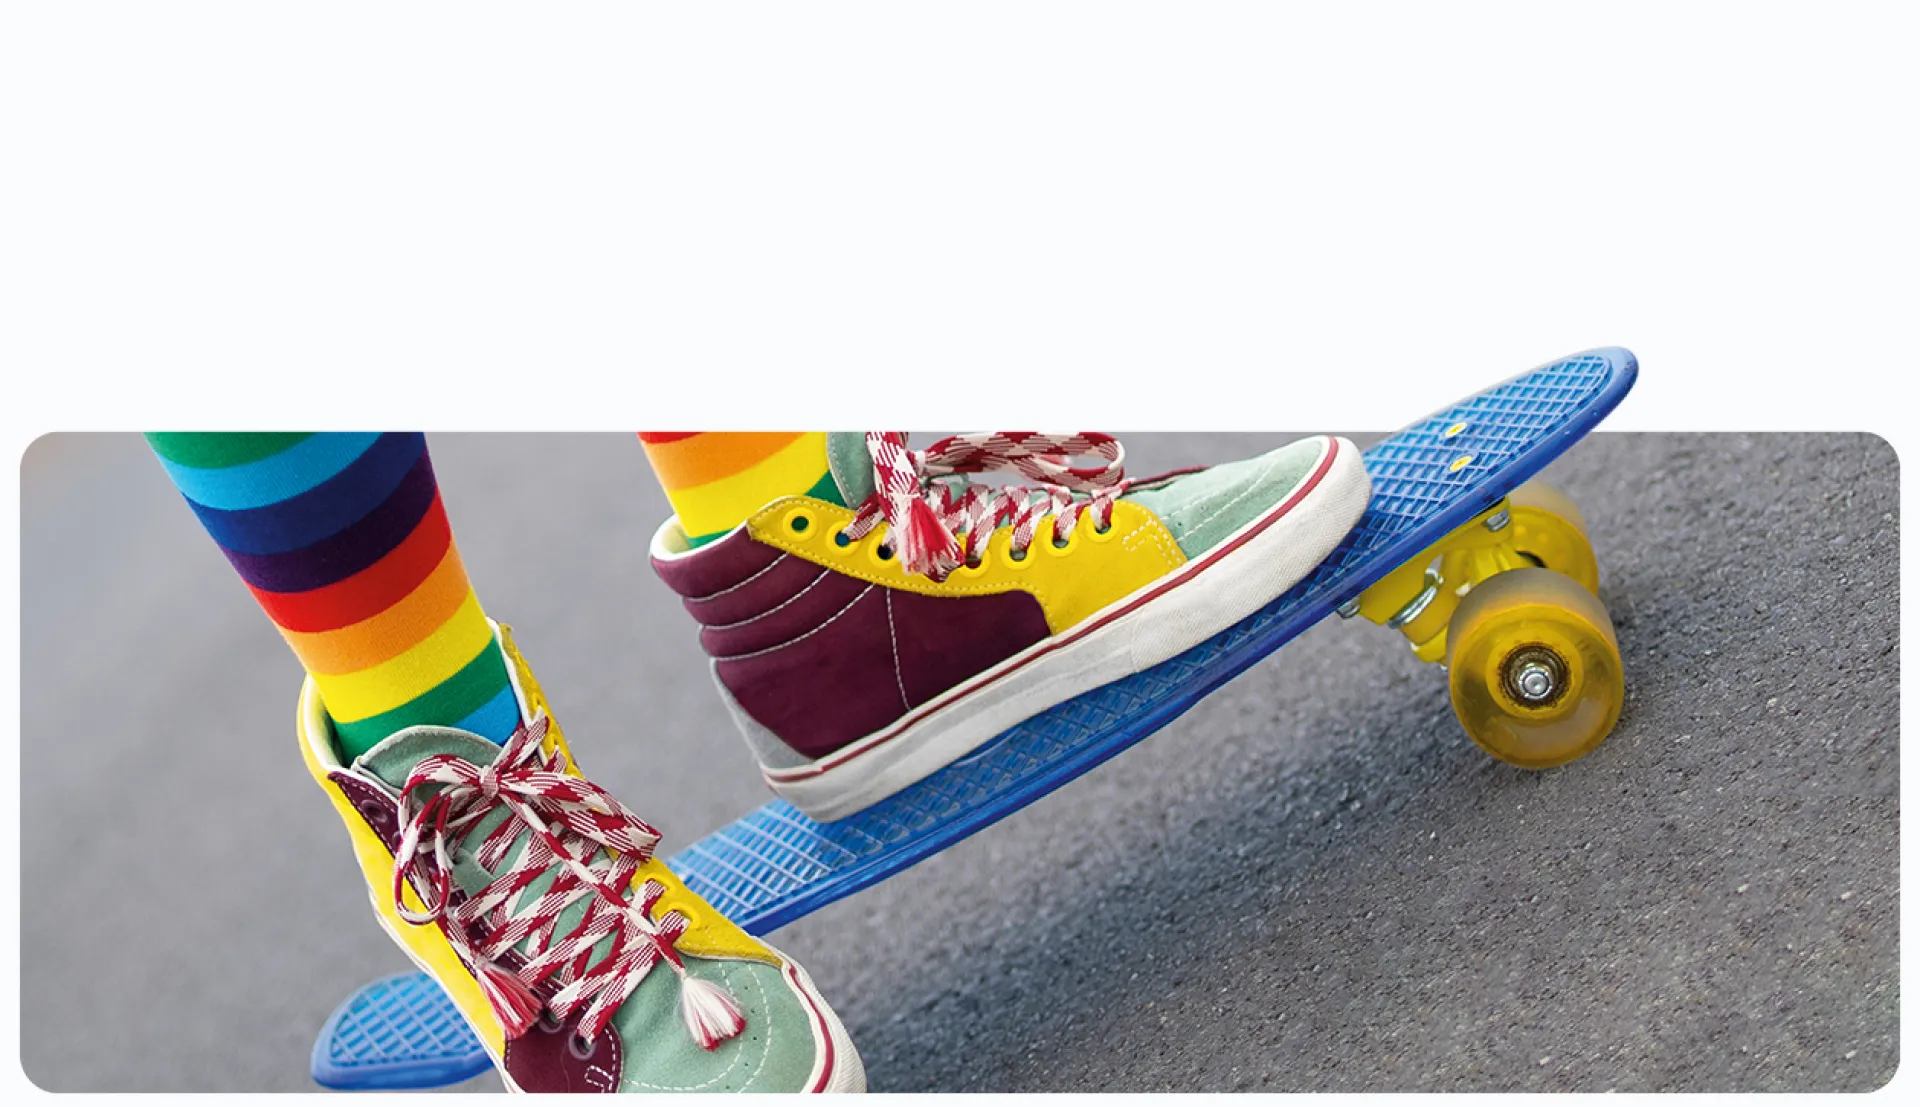 Füße in bunten Schuhen und Socken auf einem Skateboard auf asphaltierter Straße